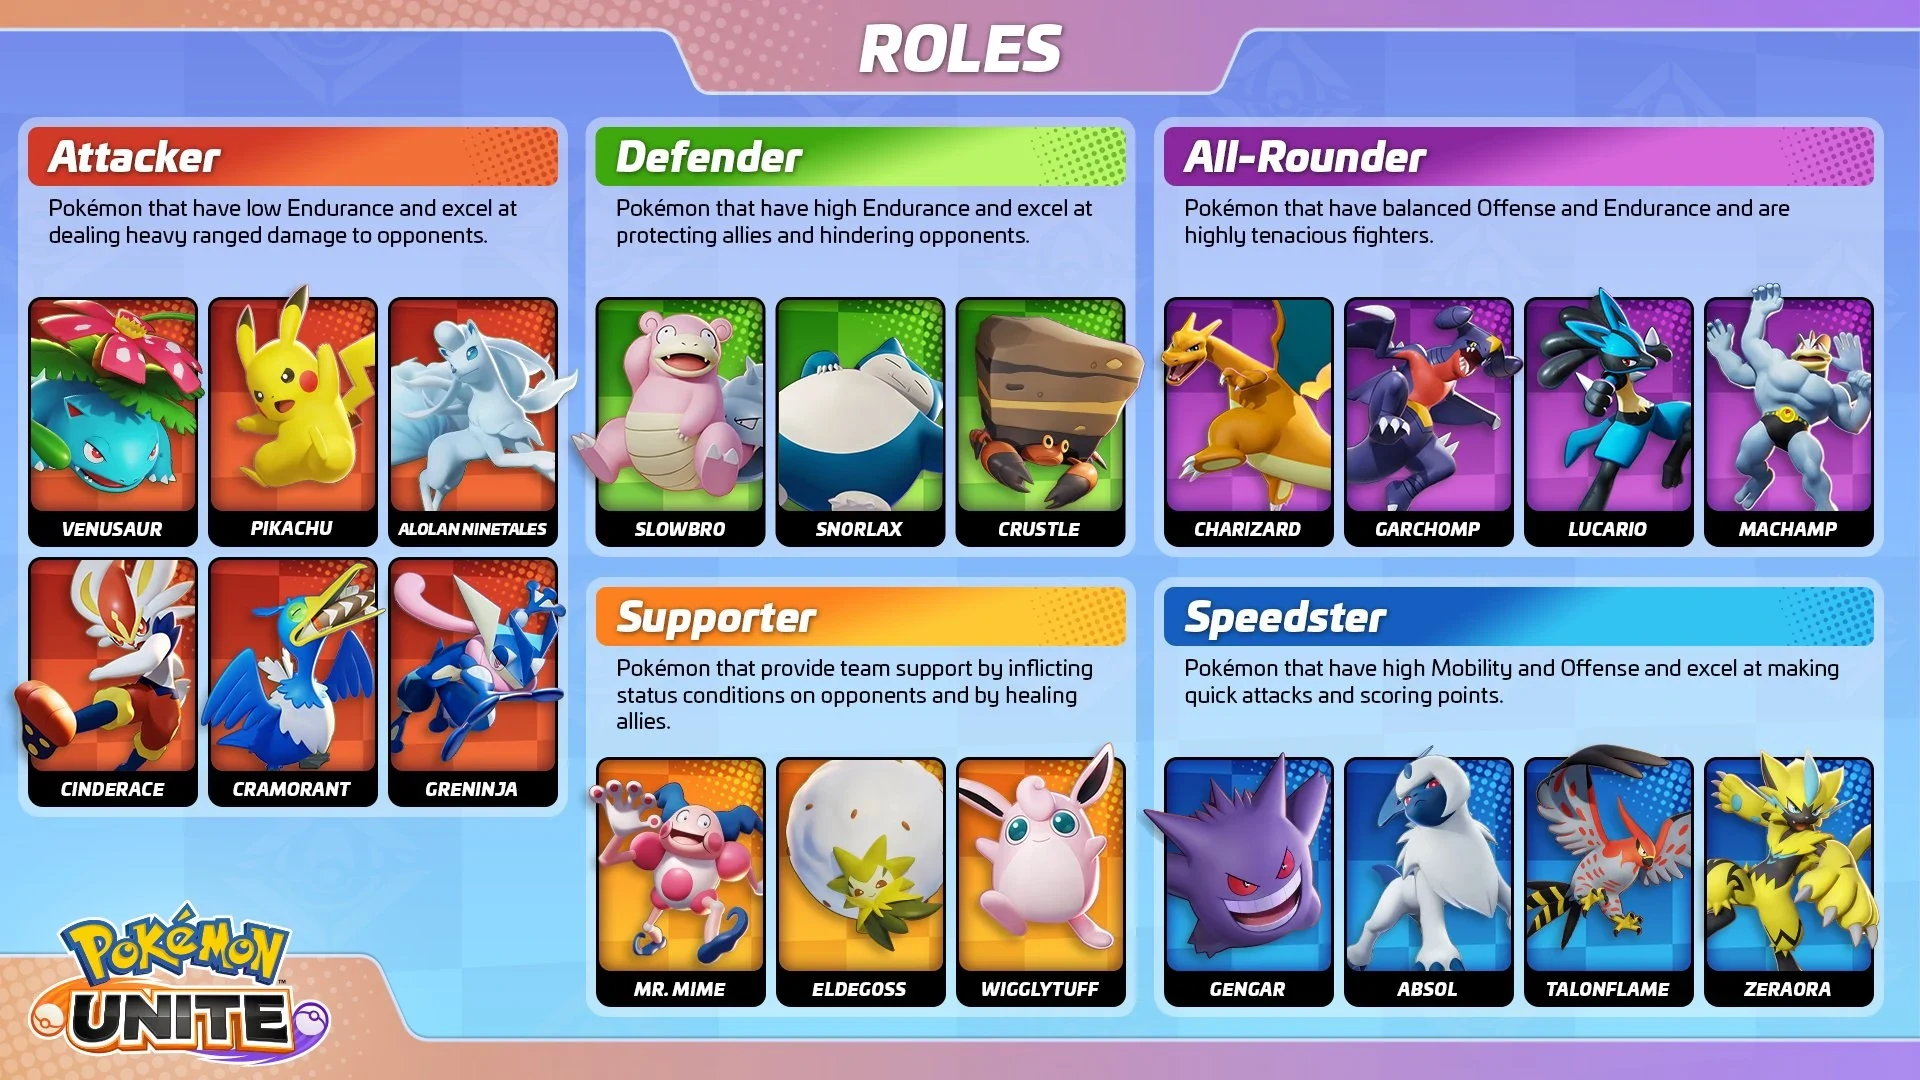 Different roles of pokemon in Pokemon Unite